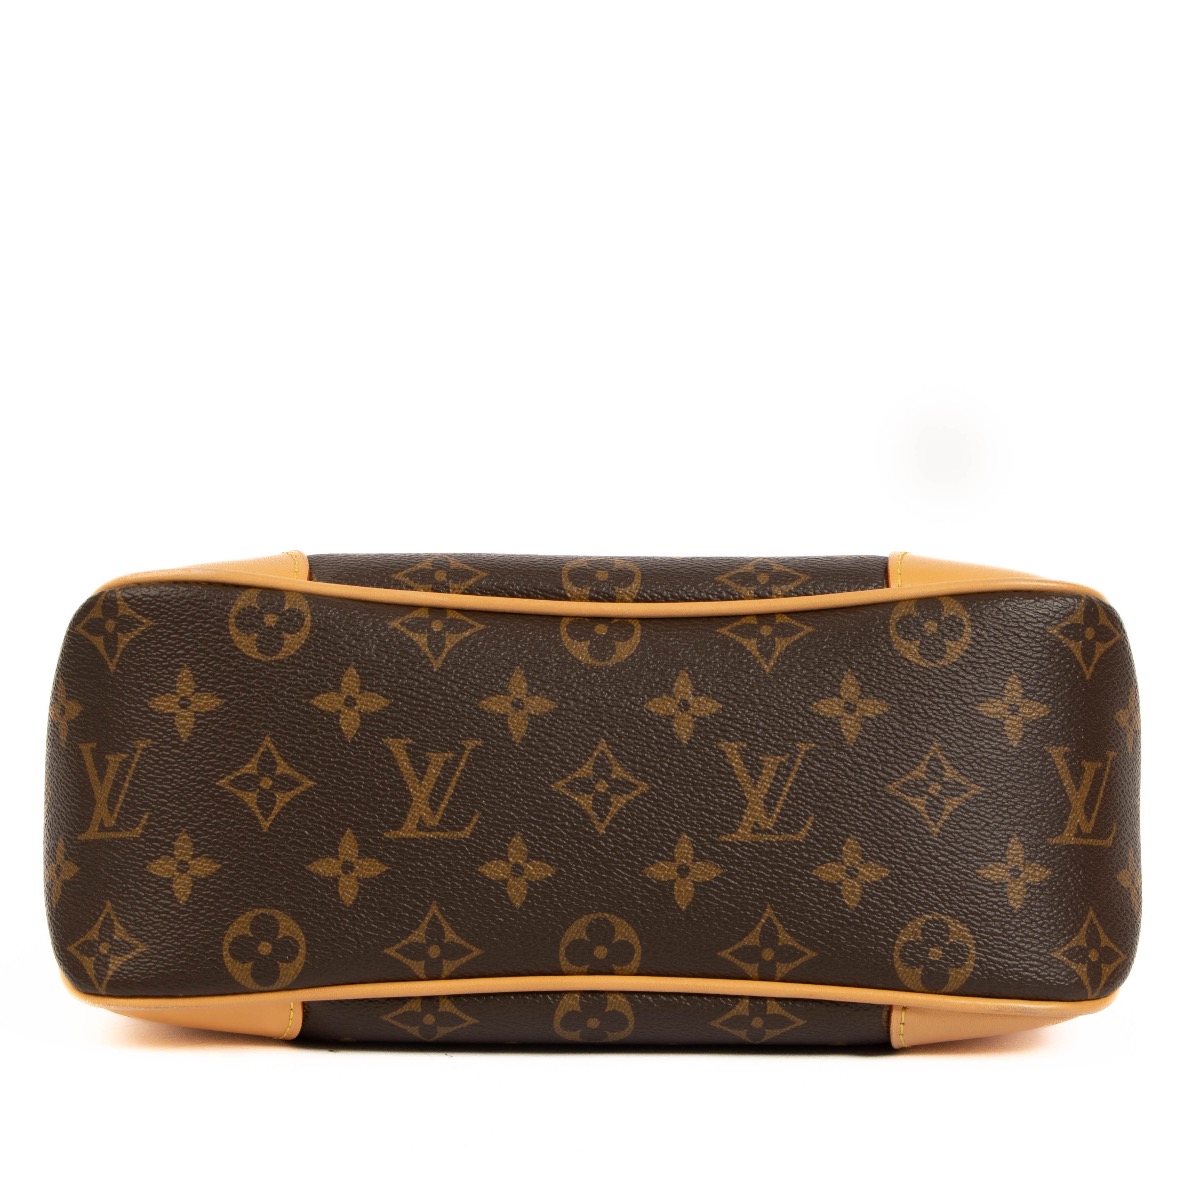 Shop Louis Vuitton Boulogne (M45831, M45832) by LESSISMORE☆